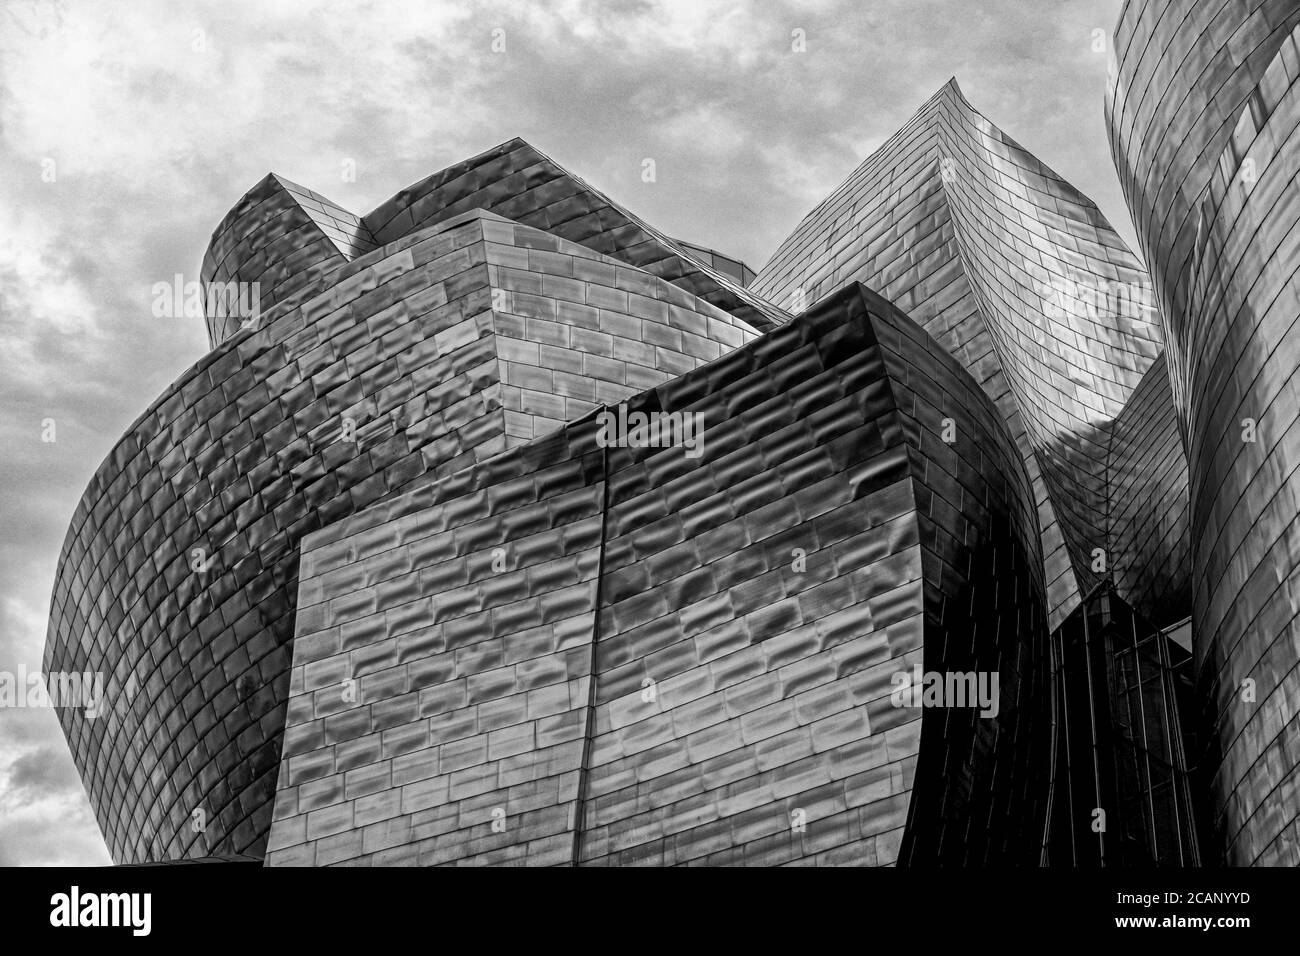 BILBAO, ESPAGNE - 9 SEPTEMBRE 2019 : vue détaillée du musée Guggenheim de Bilbao, Gascogne, pays basque, Espagne Banque D'Images